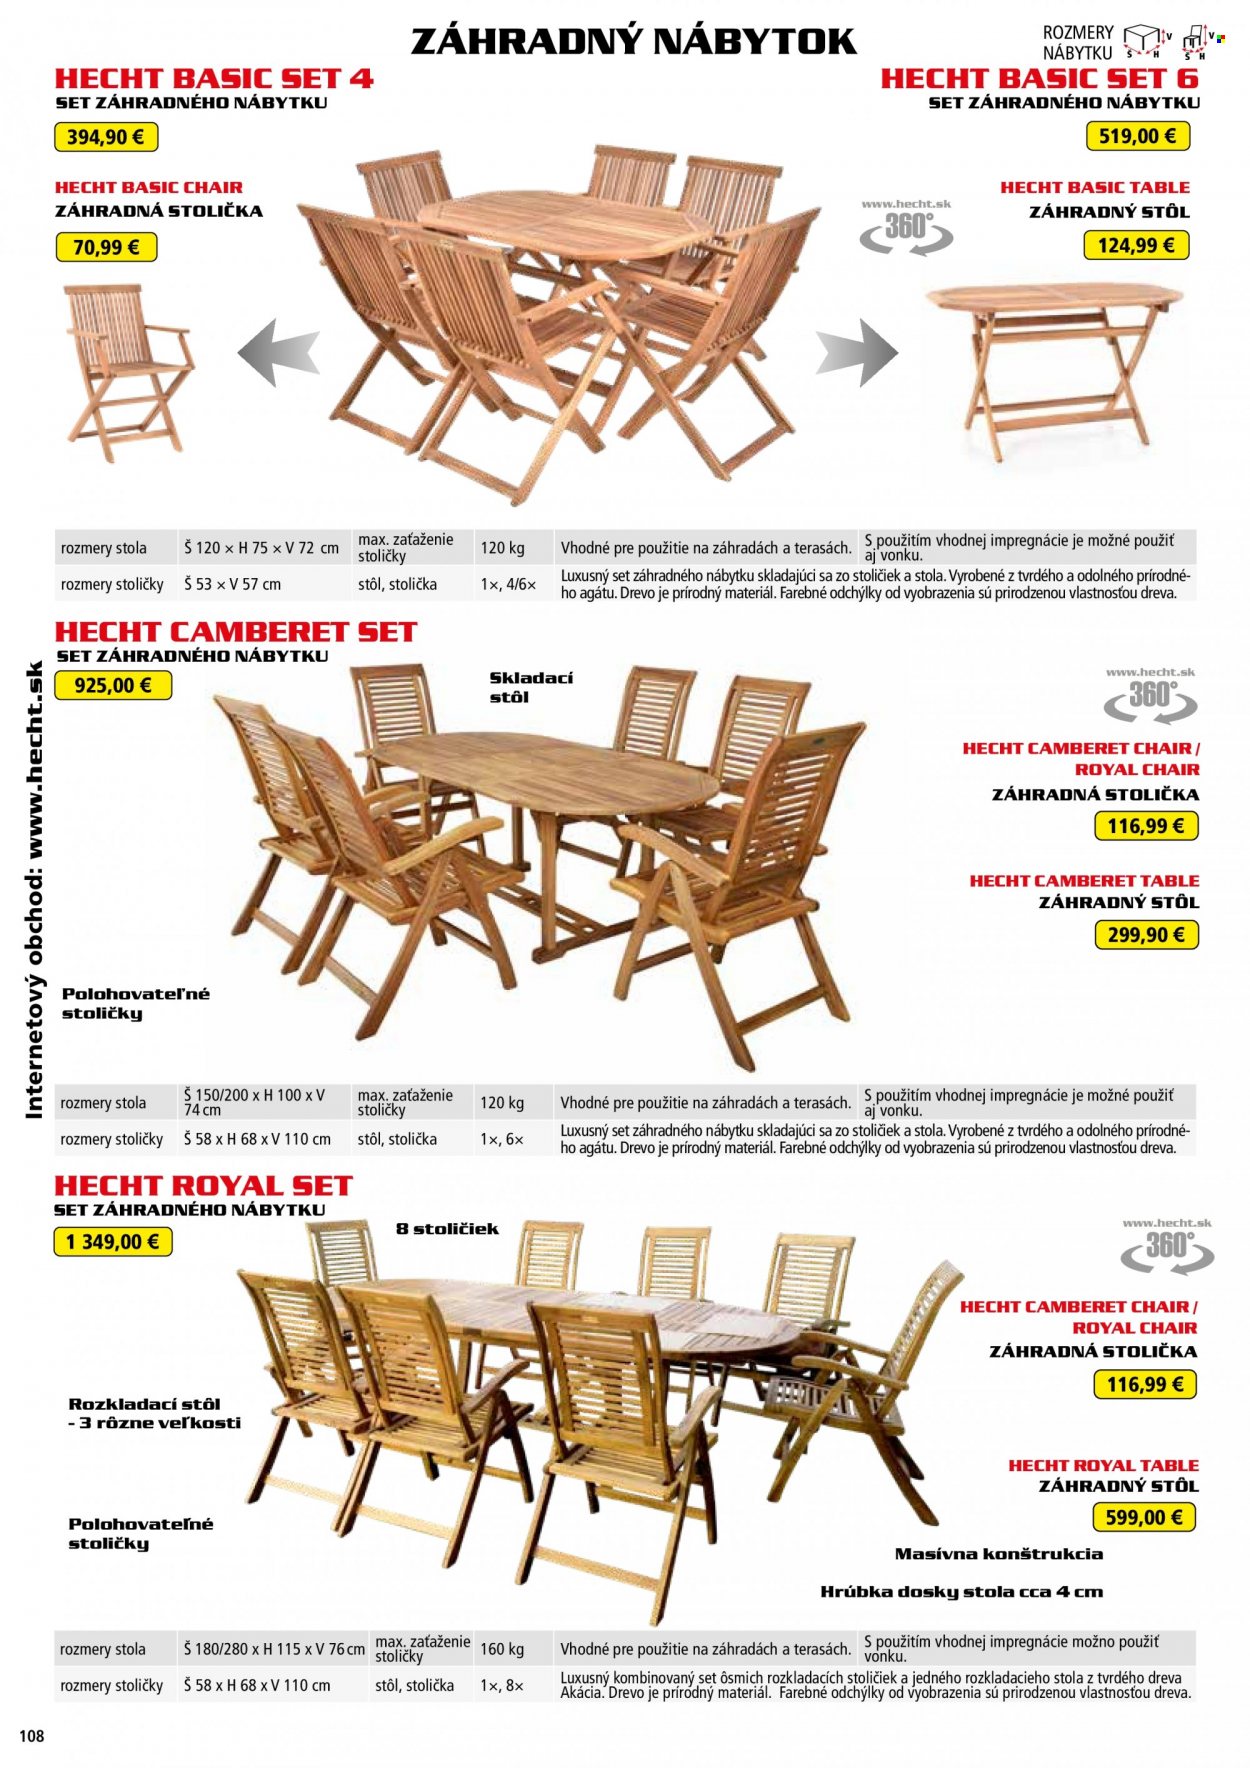 Leták Hecht - 14.8.2022 - 28.2.2023 - Produkty v akcii - Hecht, zahradný nábytok, stôl, záhradný stôl, stolička, záhradná stolička. Strana 108.